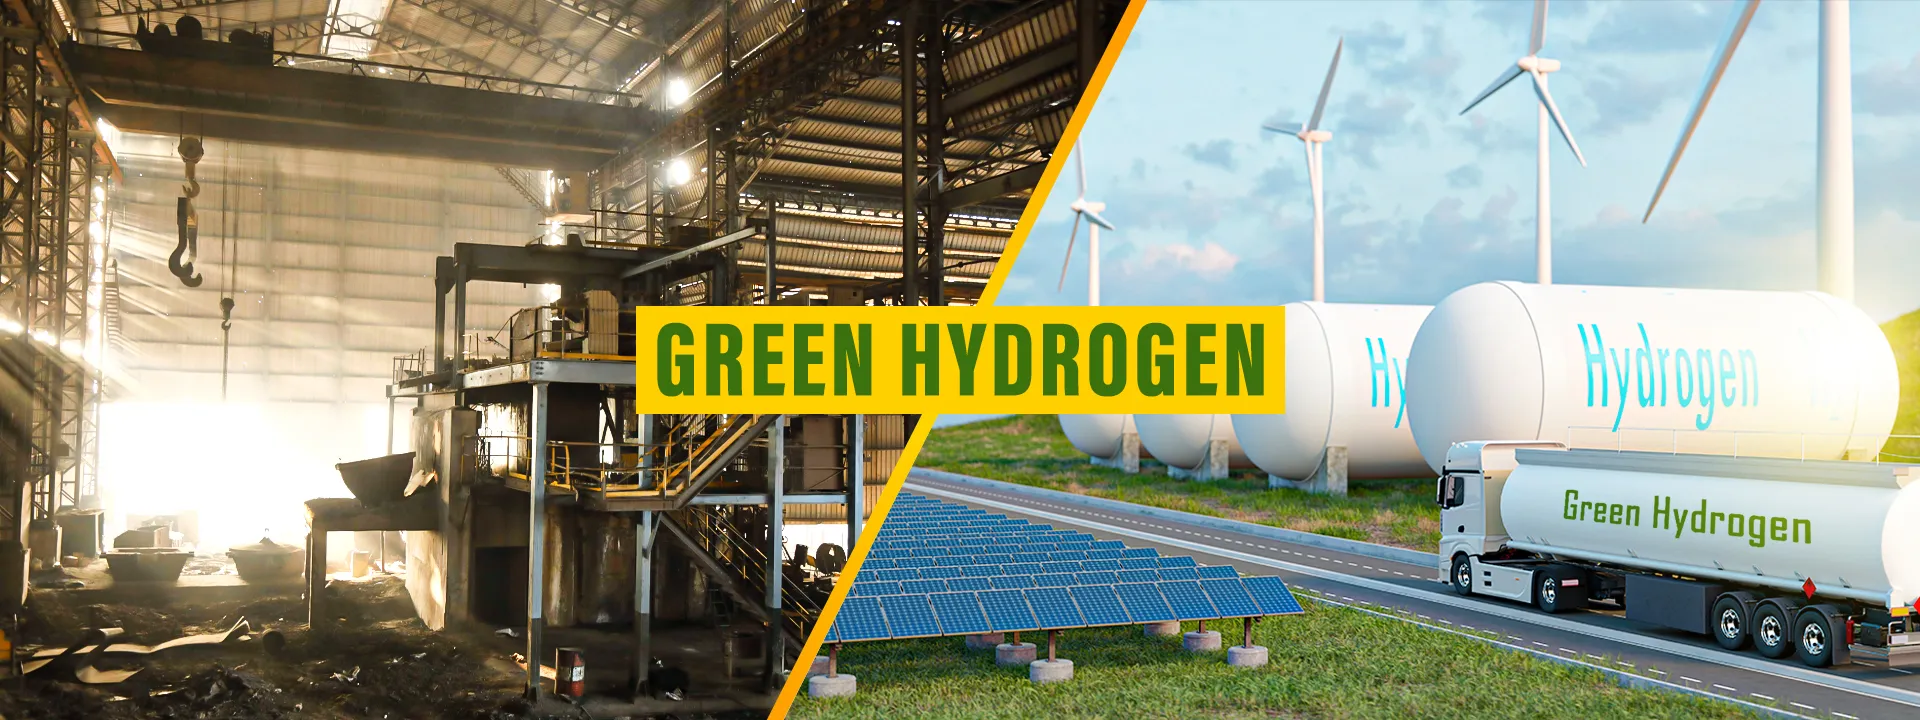 How Green Hydrogen Will Change Steel Industry